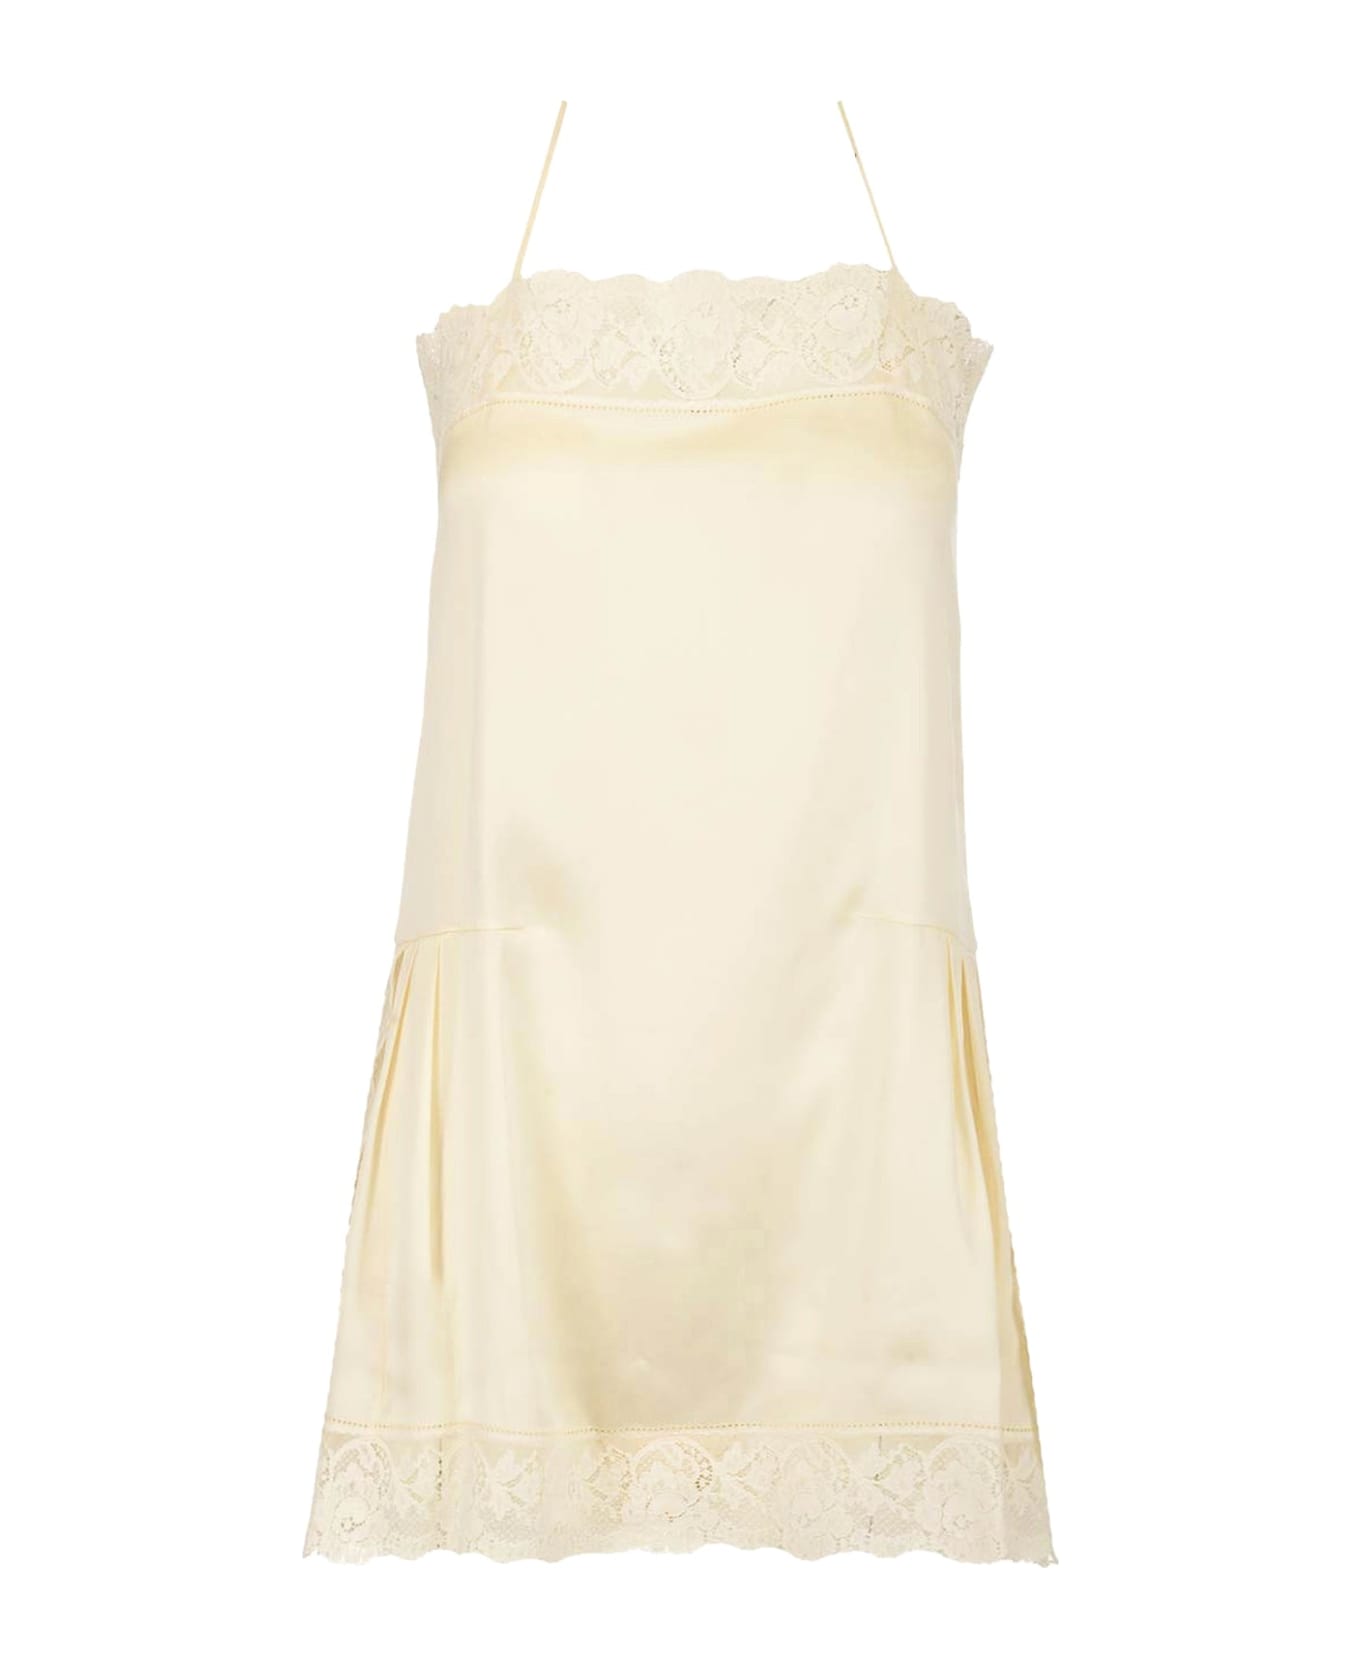 Maison Margiela Silk Dress - White